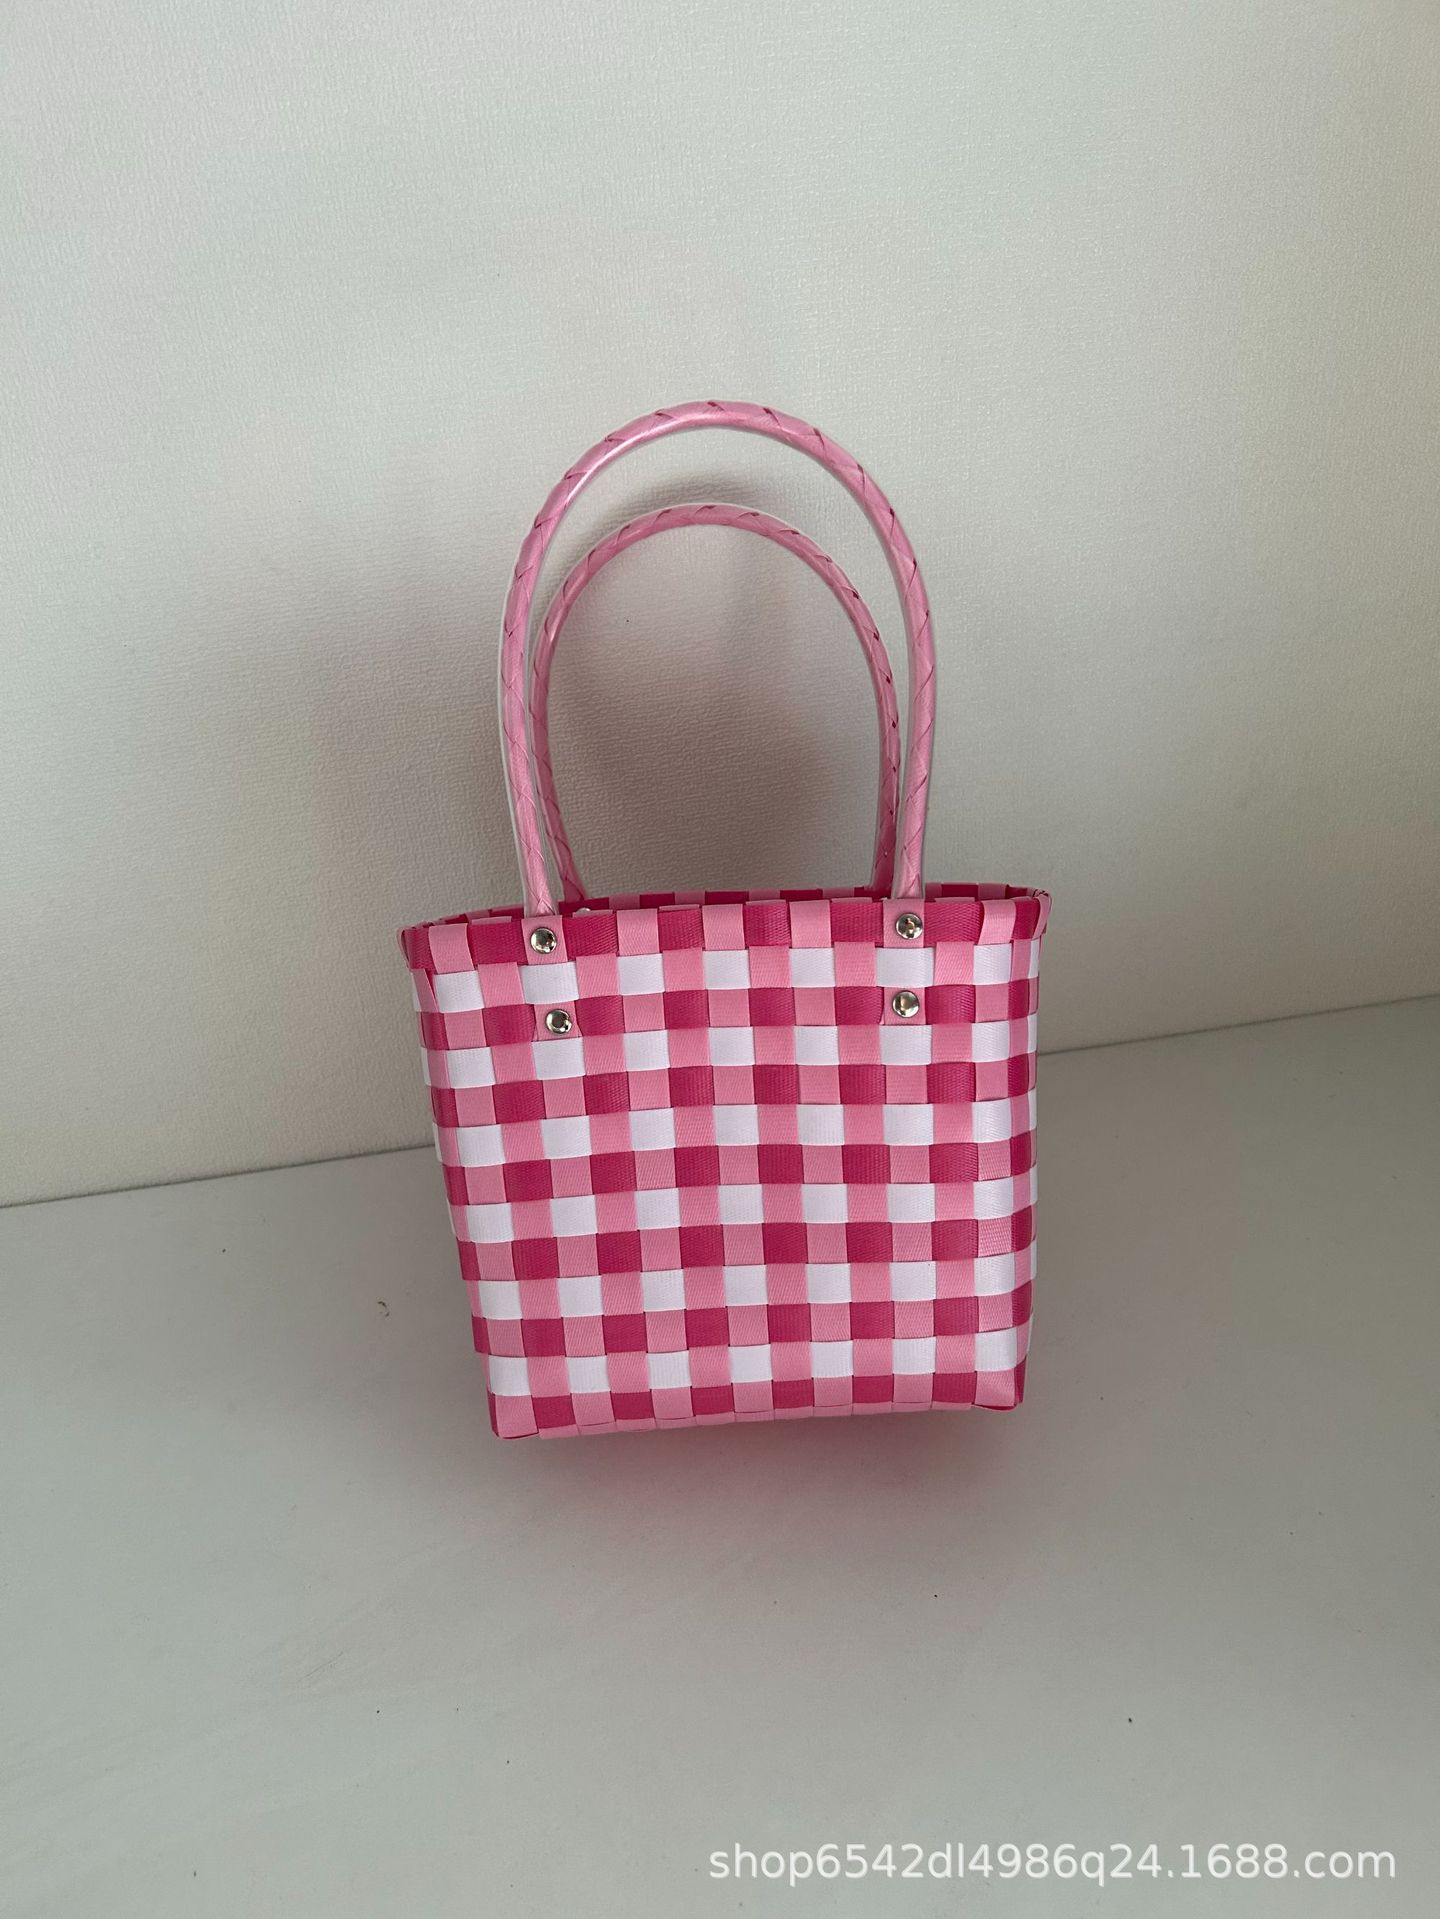 Simple Grid Woven Bag Pastoral Portable Storage Large Capacity Handbag Vegetable Basket Shoulder Bag with Gift Small Basket